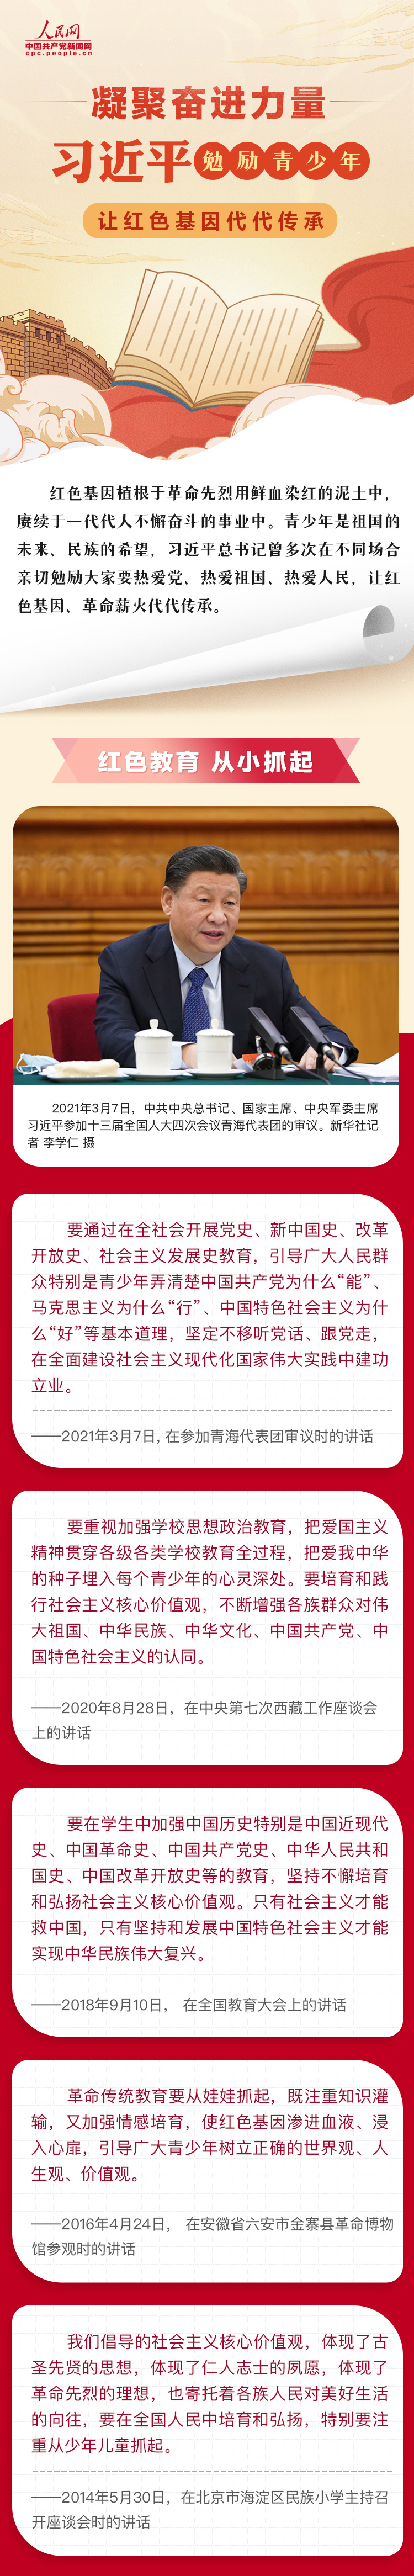 1习近平勉励青少年让红色基因代代相传 人民网-中国共产党新闻网.jpg